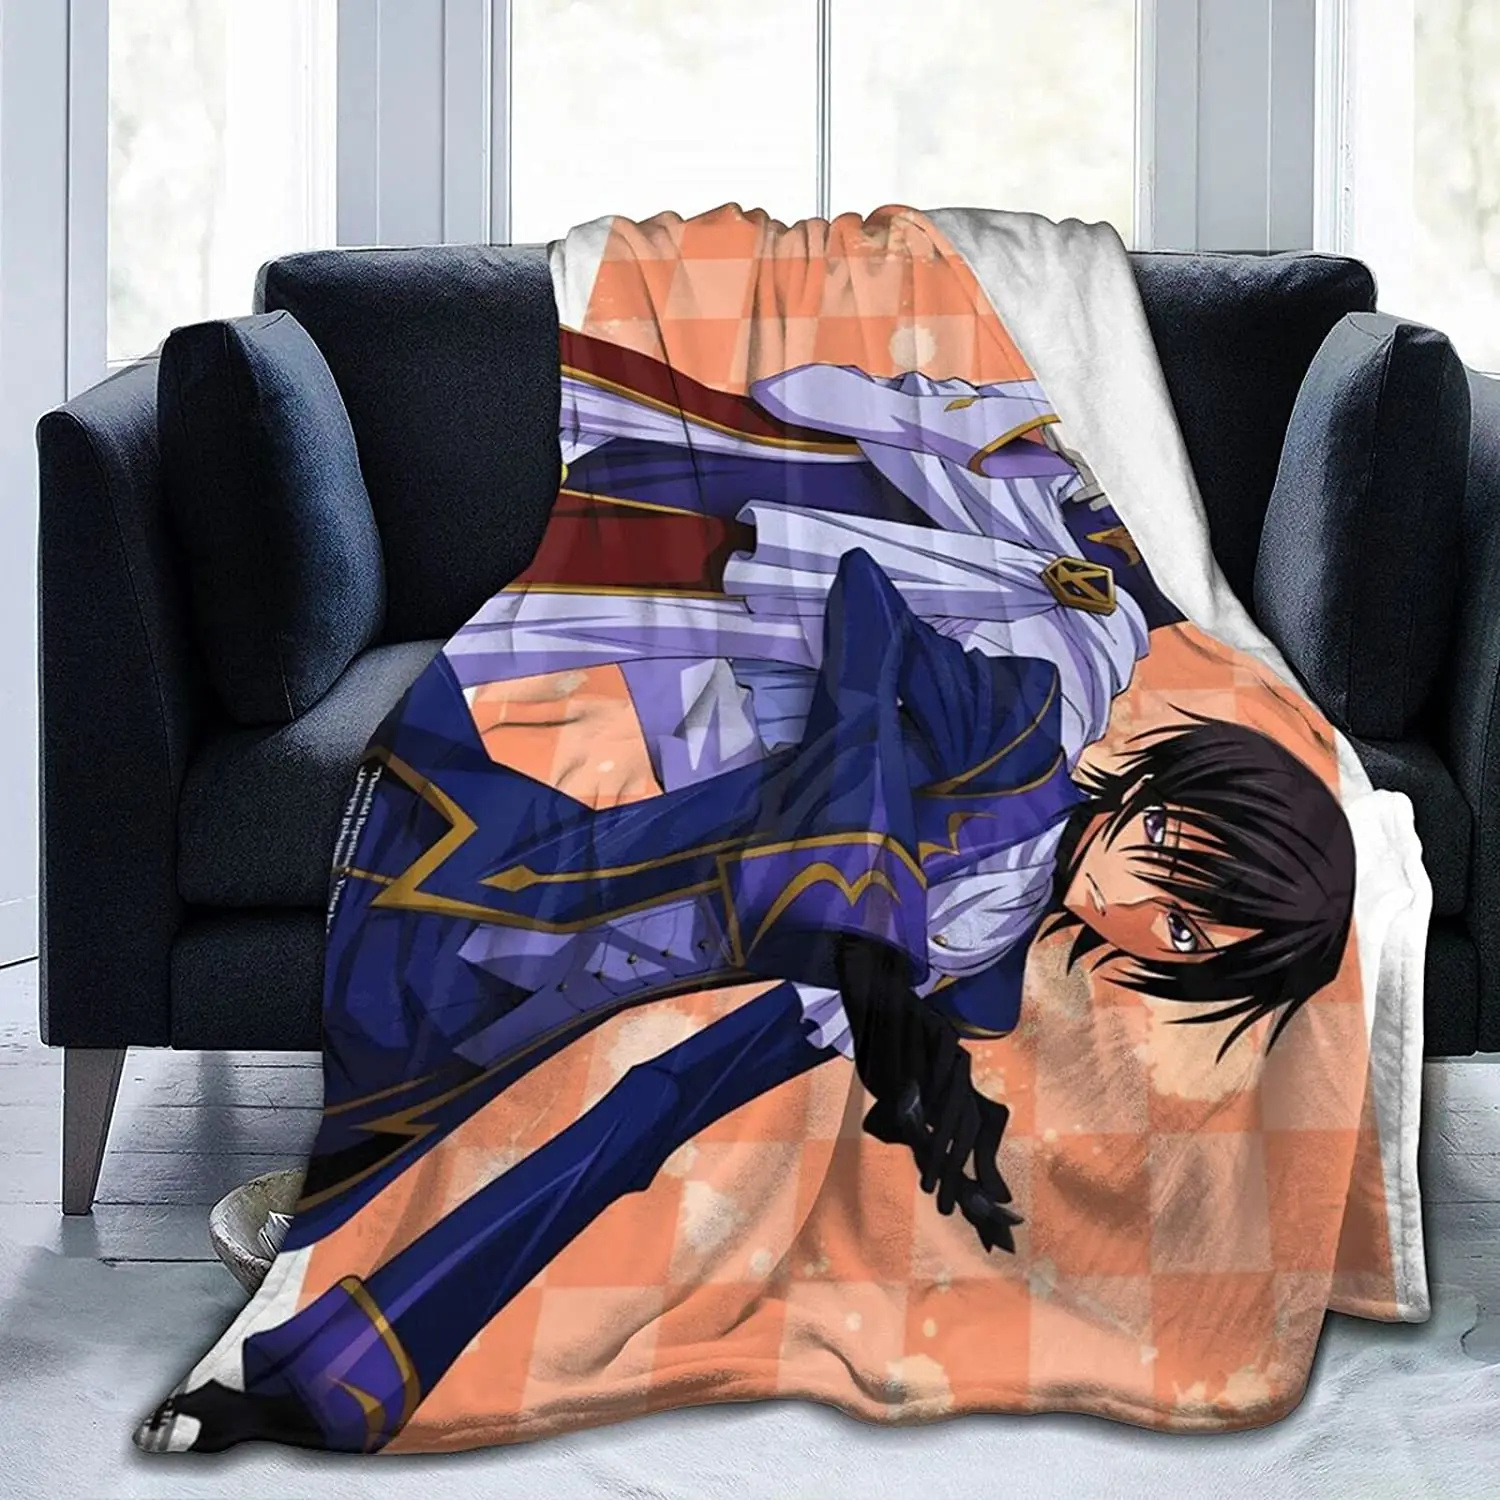 

Schneizel El Britannia Fluffy Soft and Comfortable Blanket, Anime Warm Embrace of Sympathy